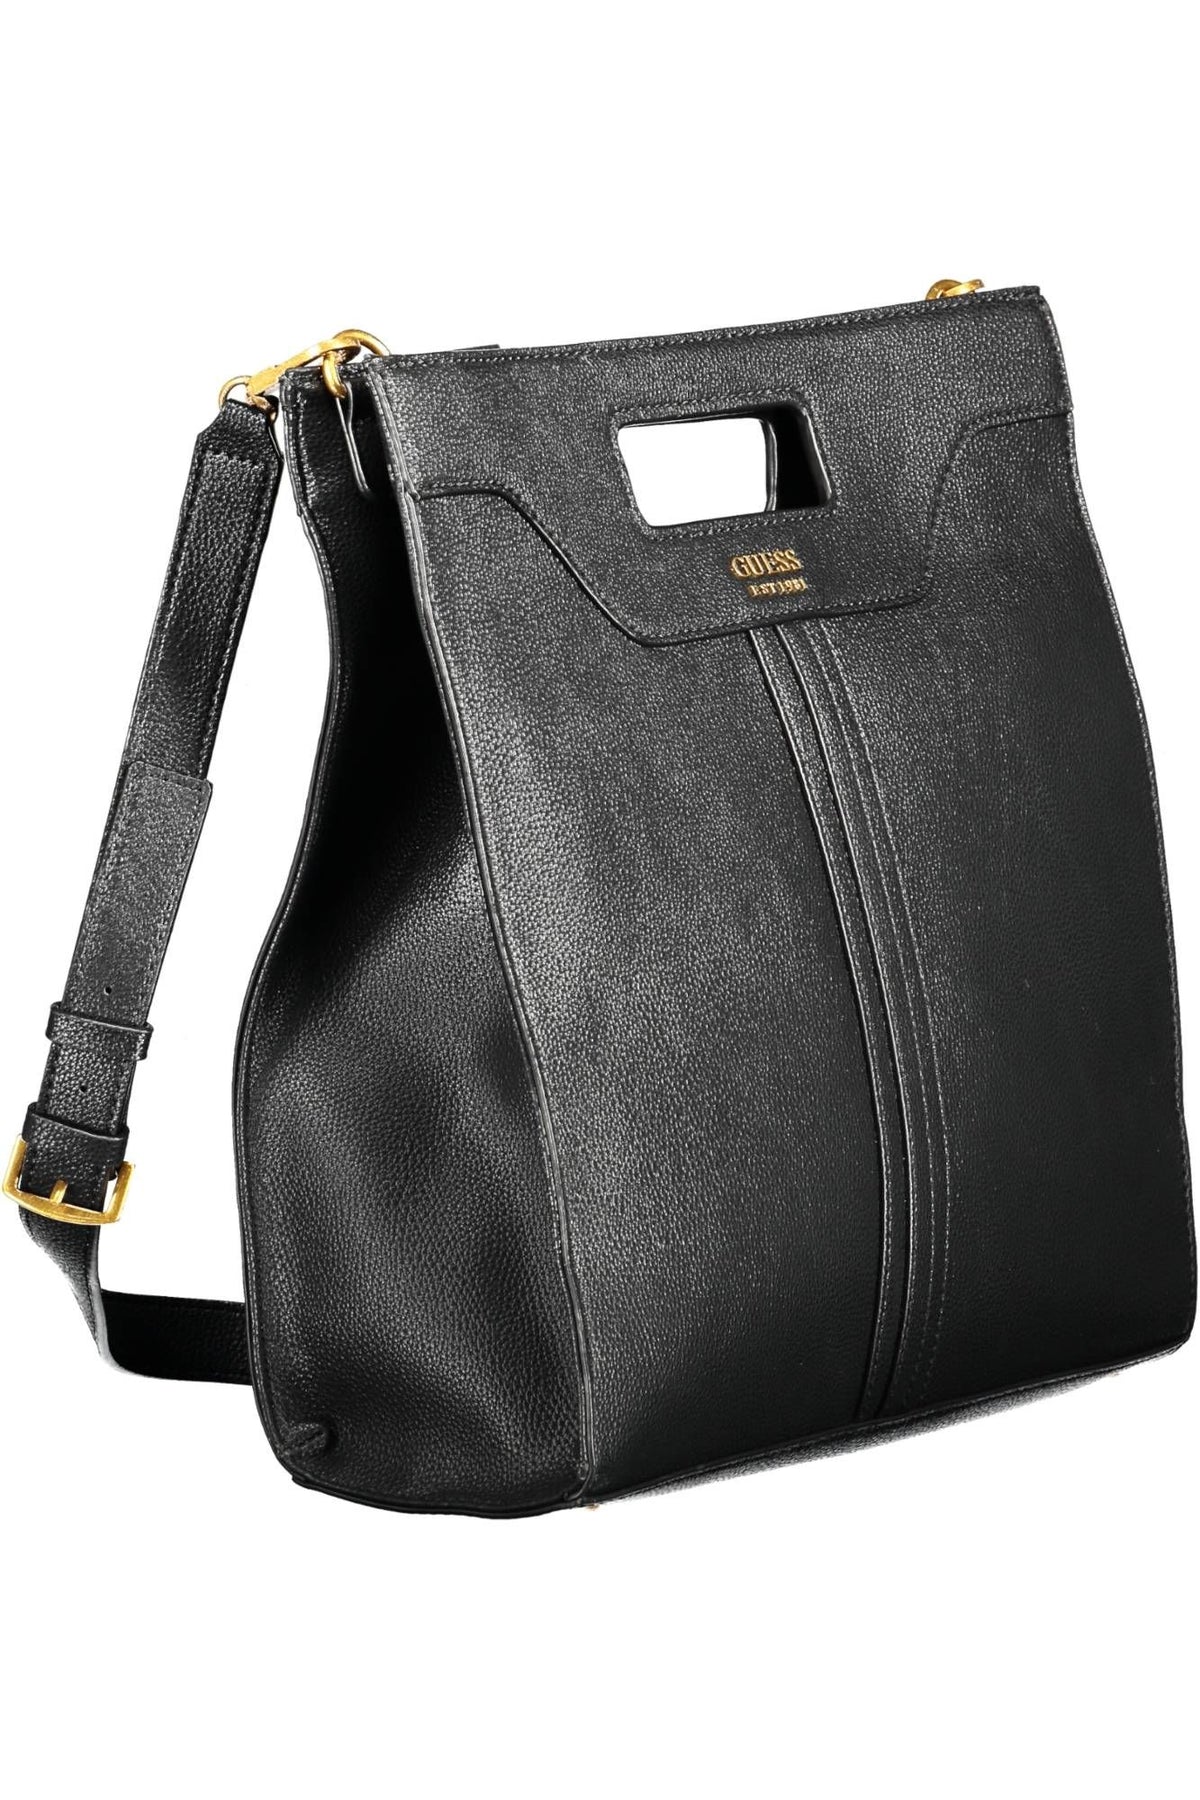 Guess Jeans – Schicke schwarze Handtasche mit kontrastierenden Details